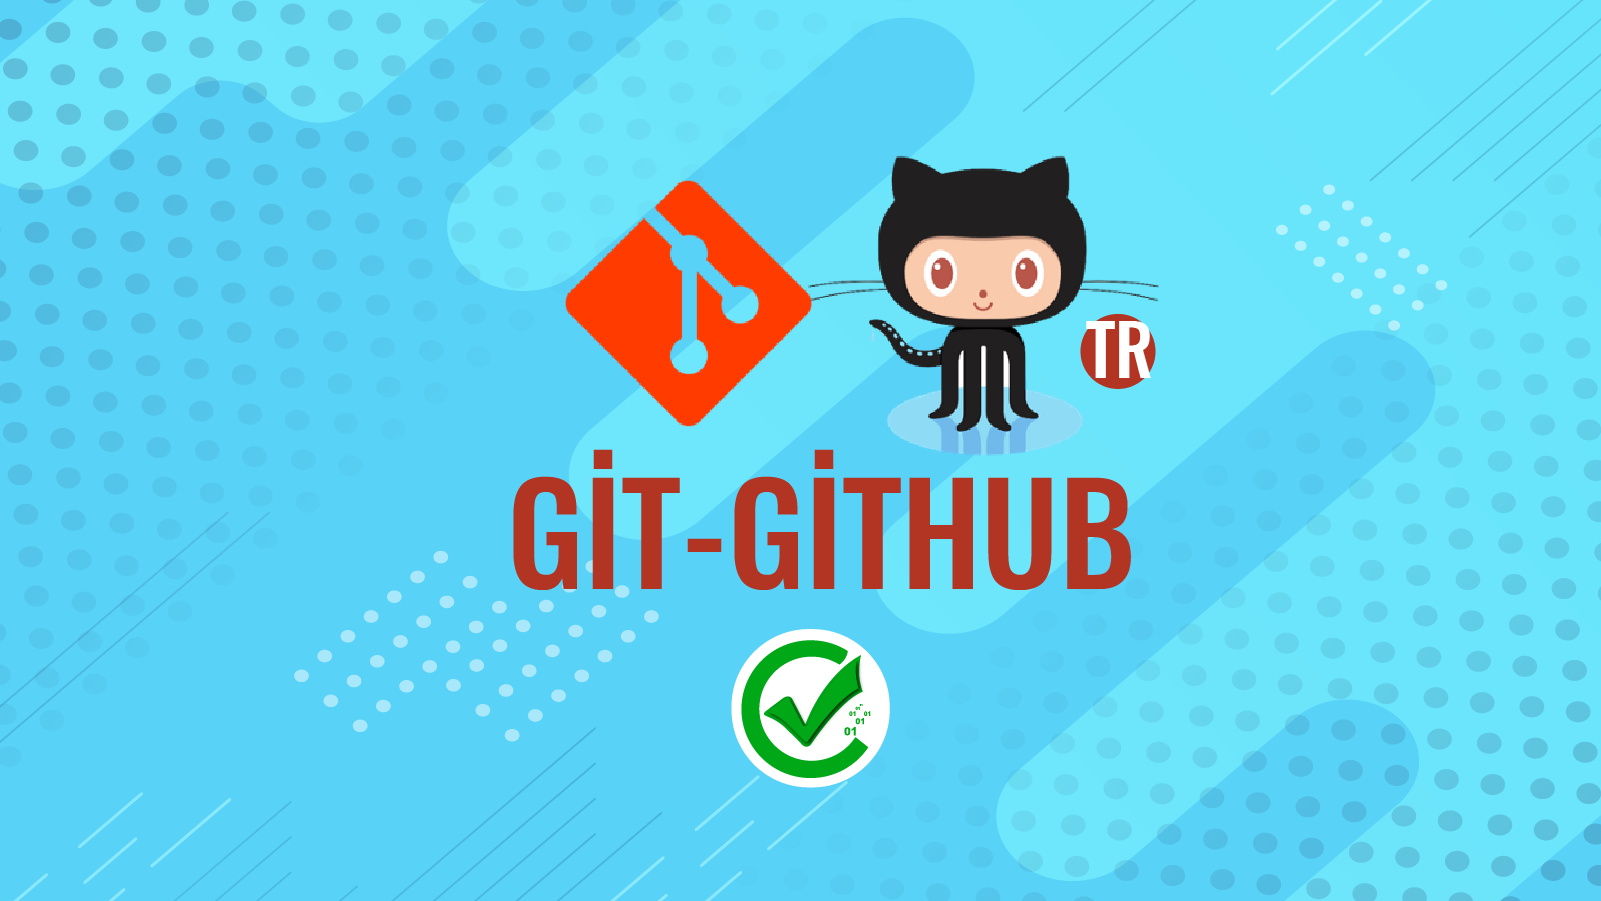 Git-GitHub 130 131 158 218